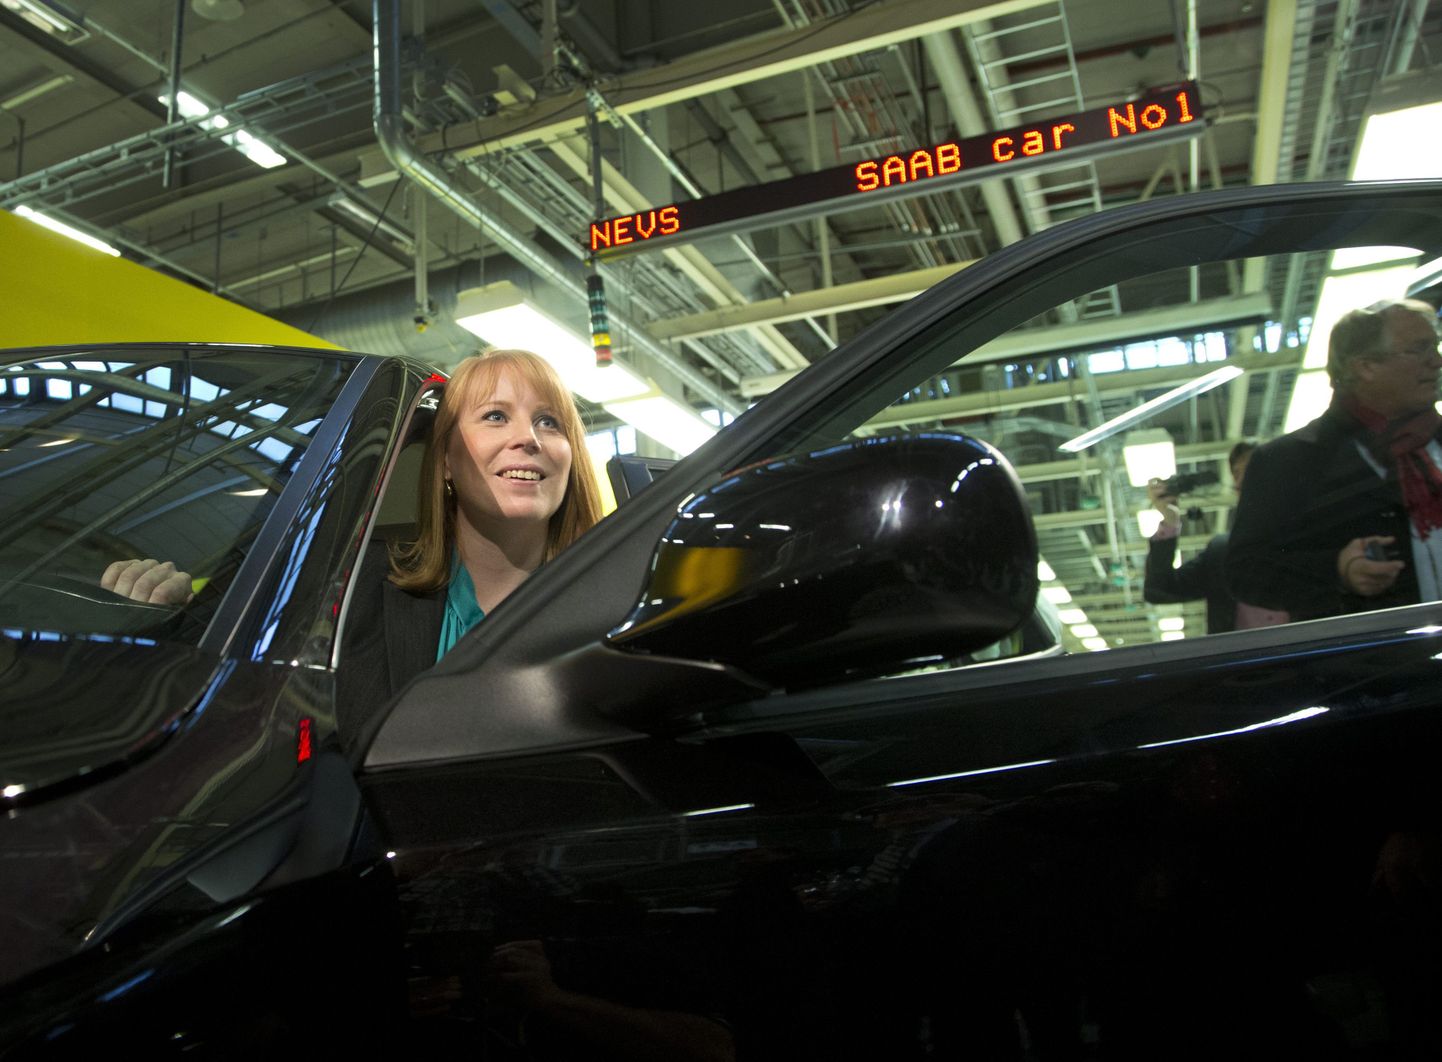 Rootsi tööstusminister Annie Loof Saabi tehases 2013 aasta detsembris, kui Nevsi omandusse läinud Saab sai valmis üle pika aja uue mudeliga, Saab 9-3 Aeroga.